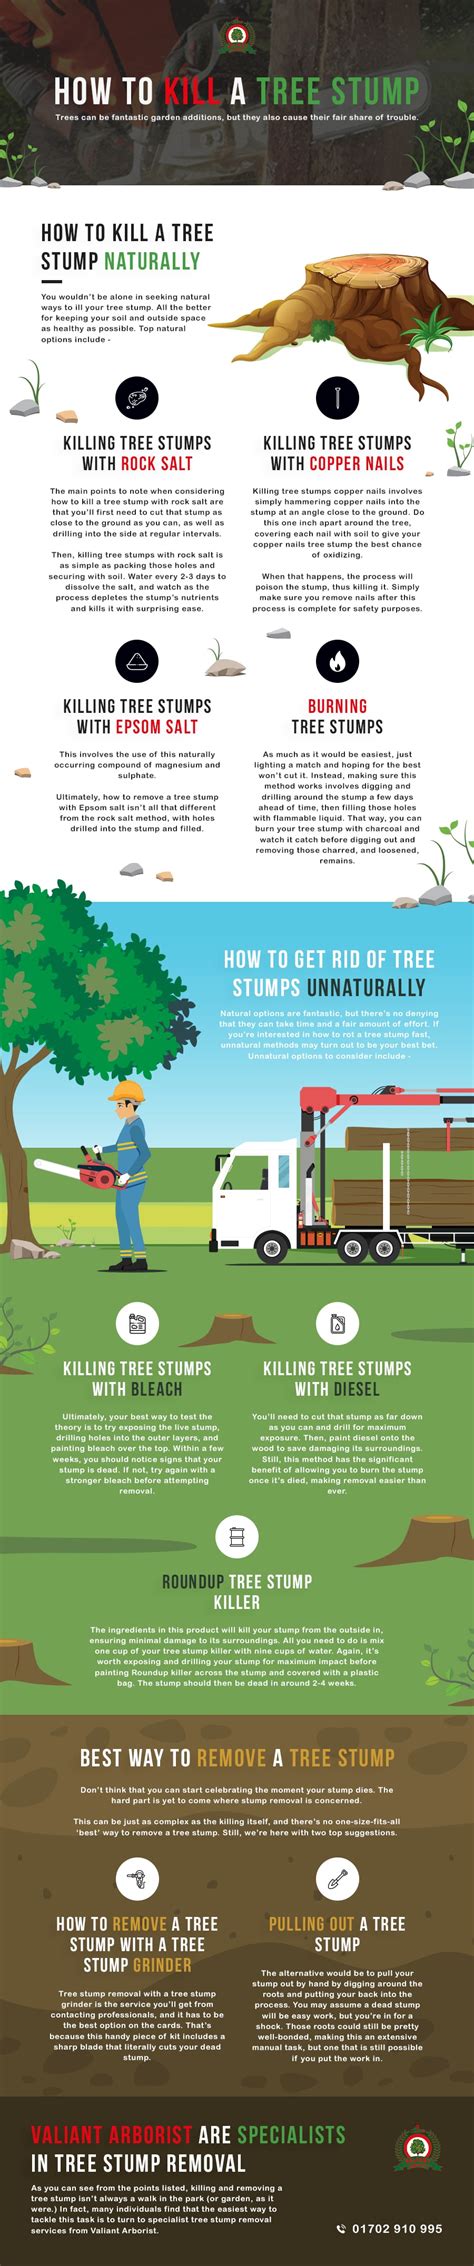 4 Easy Ways To Kill A Tree Stump Naturally And Unnaturally Valiant Arborist